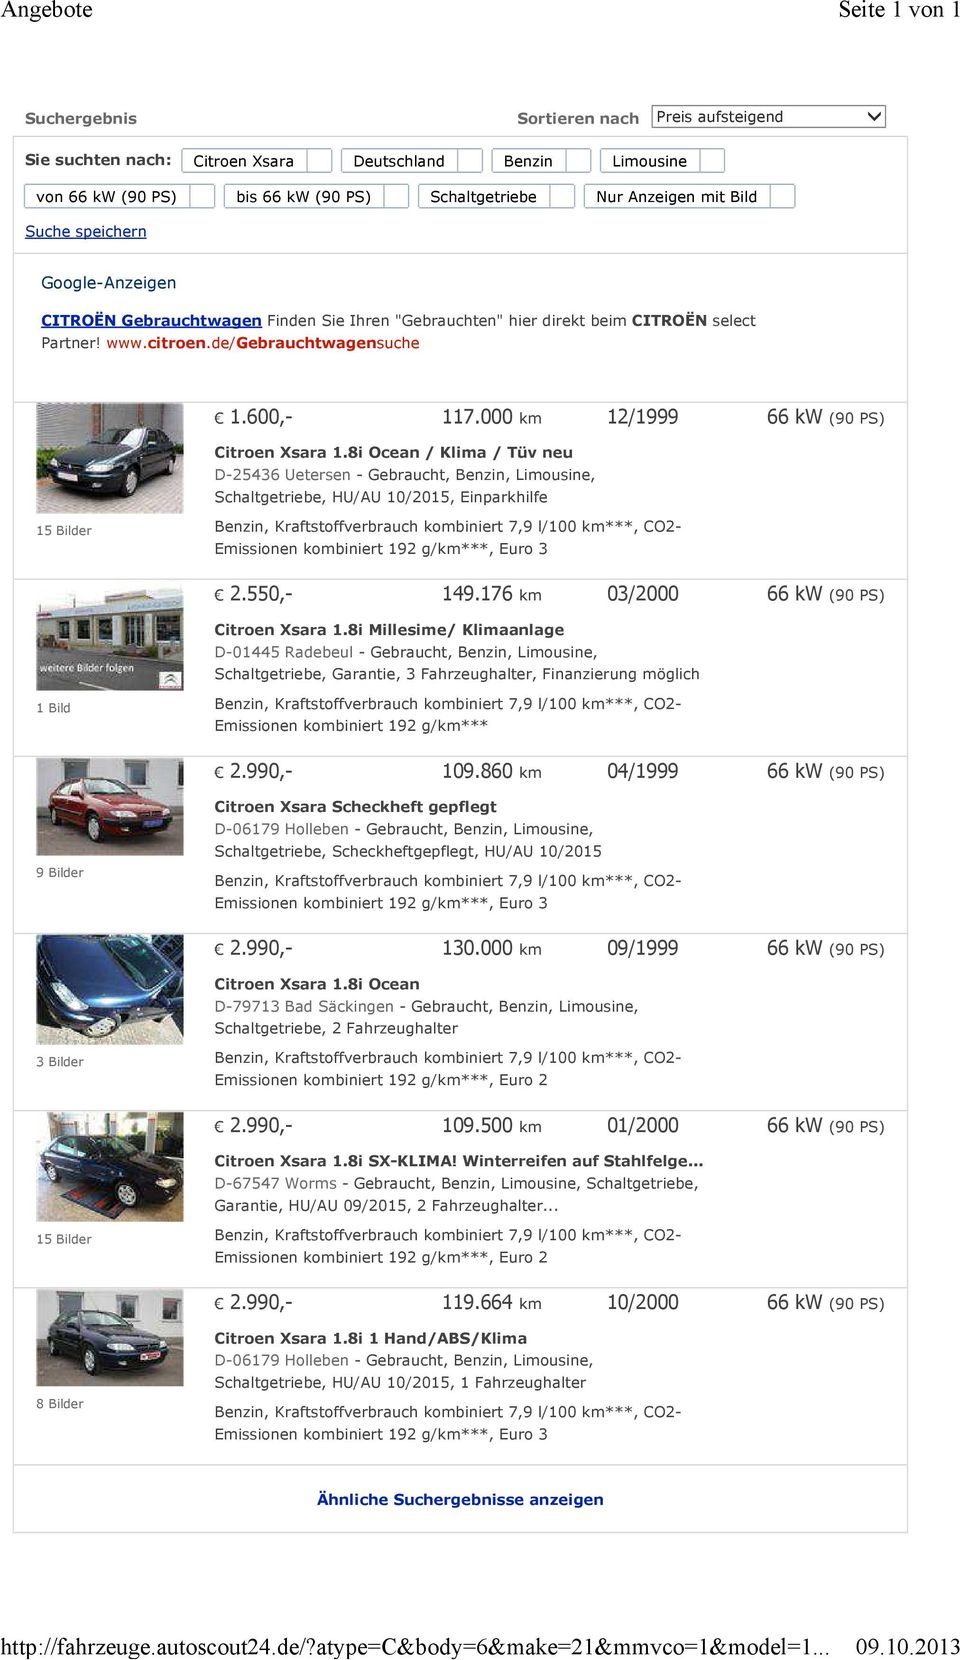 speichern Google-Anzeigen CITROËN Gebrauchtwagen Finden Sie Ihren "Gebrauchten" hier direkt beim CITROËN select Partner! www.citroen.de/gebrauchtwagensuche 1.600,- 117.